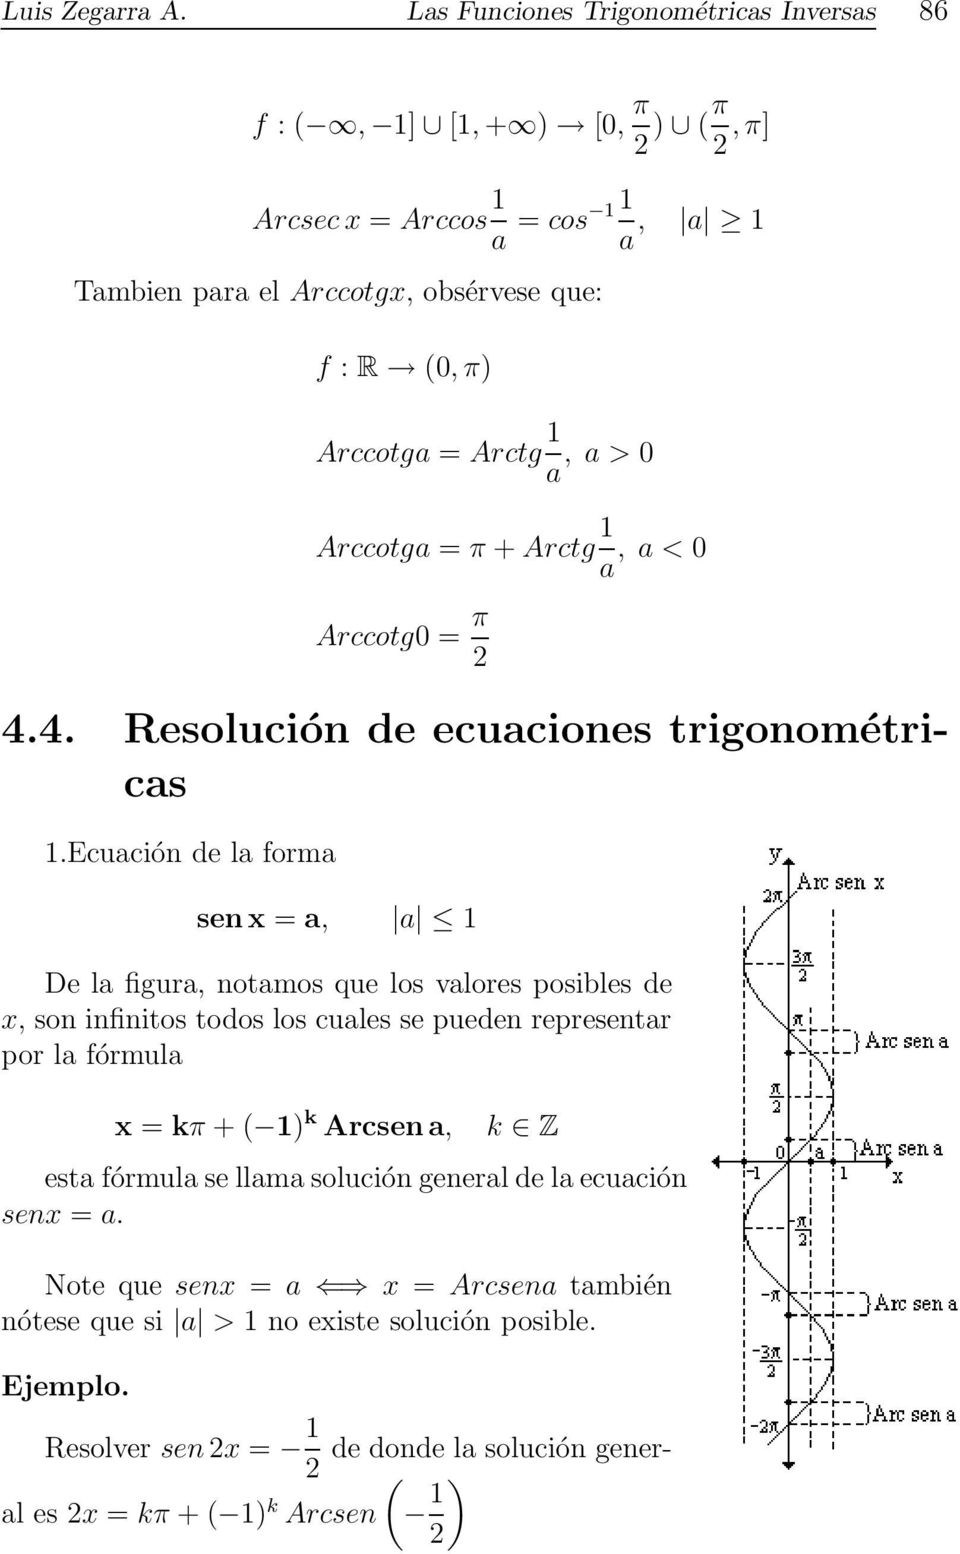 Arctg 1 a, a > 0 Arccotga = π + Arctg 1 a, a < 0 Arccotg0 = π 4.4. Resolución de ecuaciones trigonométricas 1.